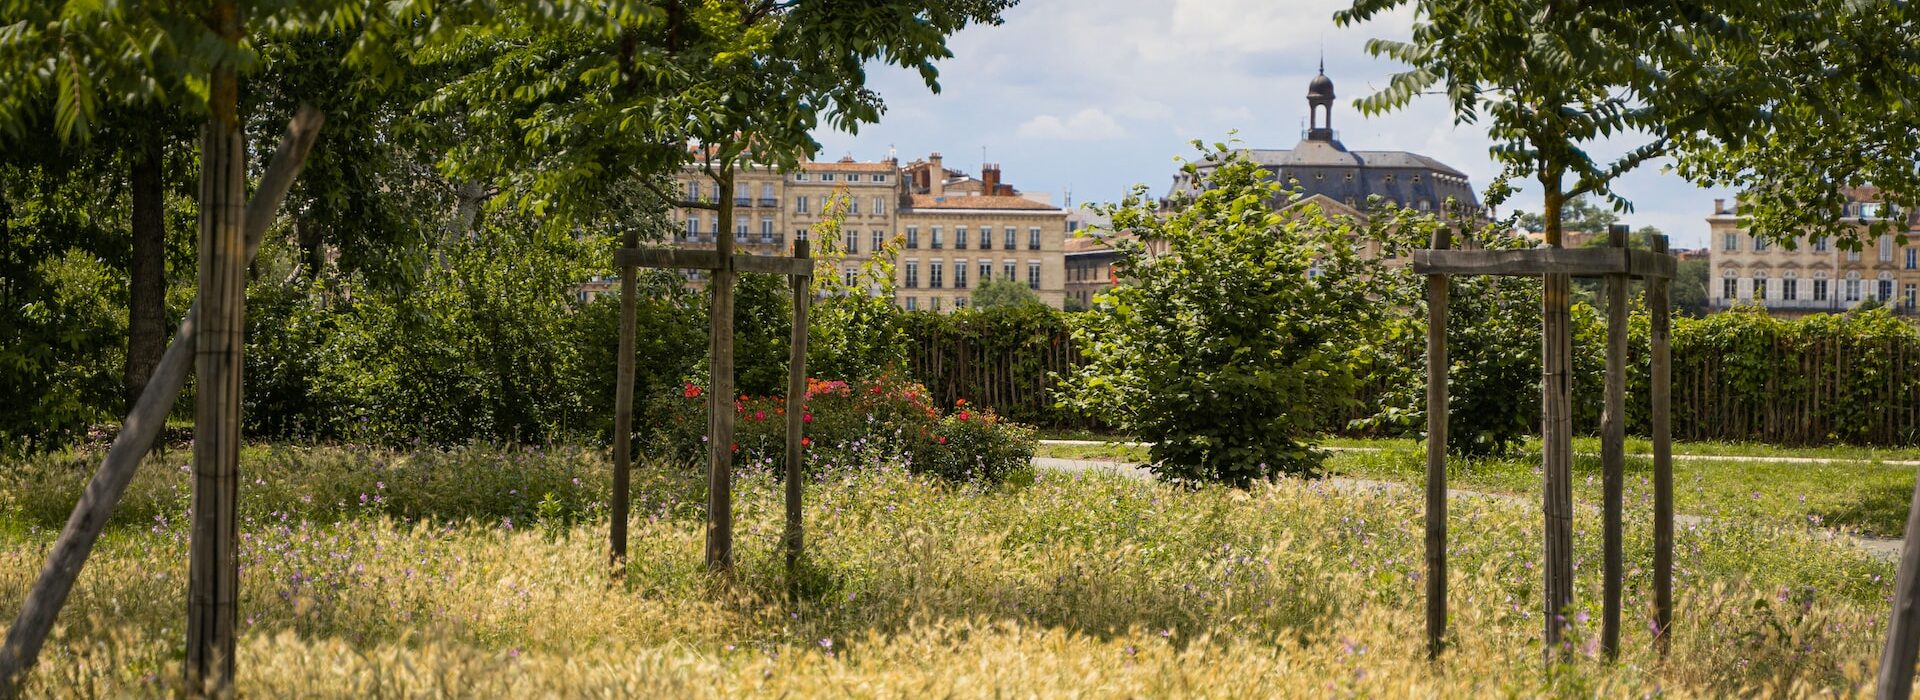 Couverture végétale - Bordeaux